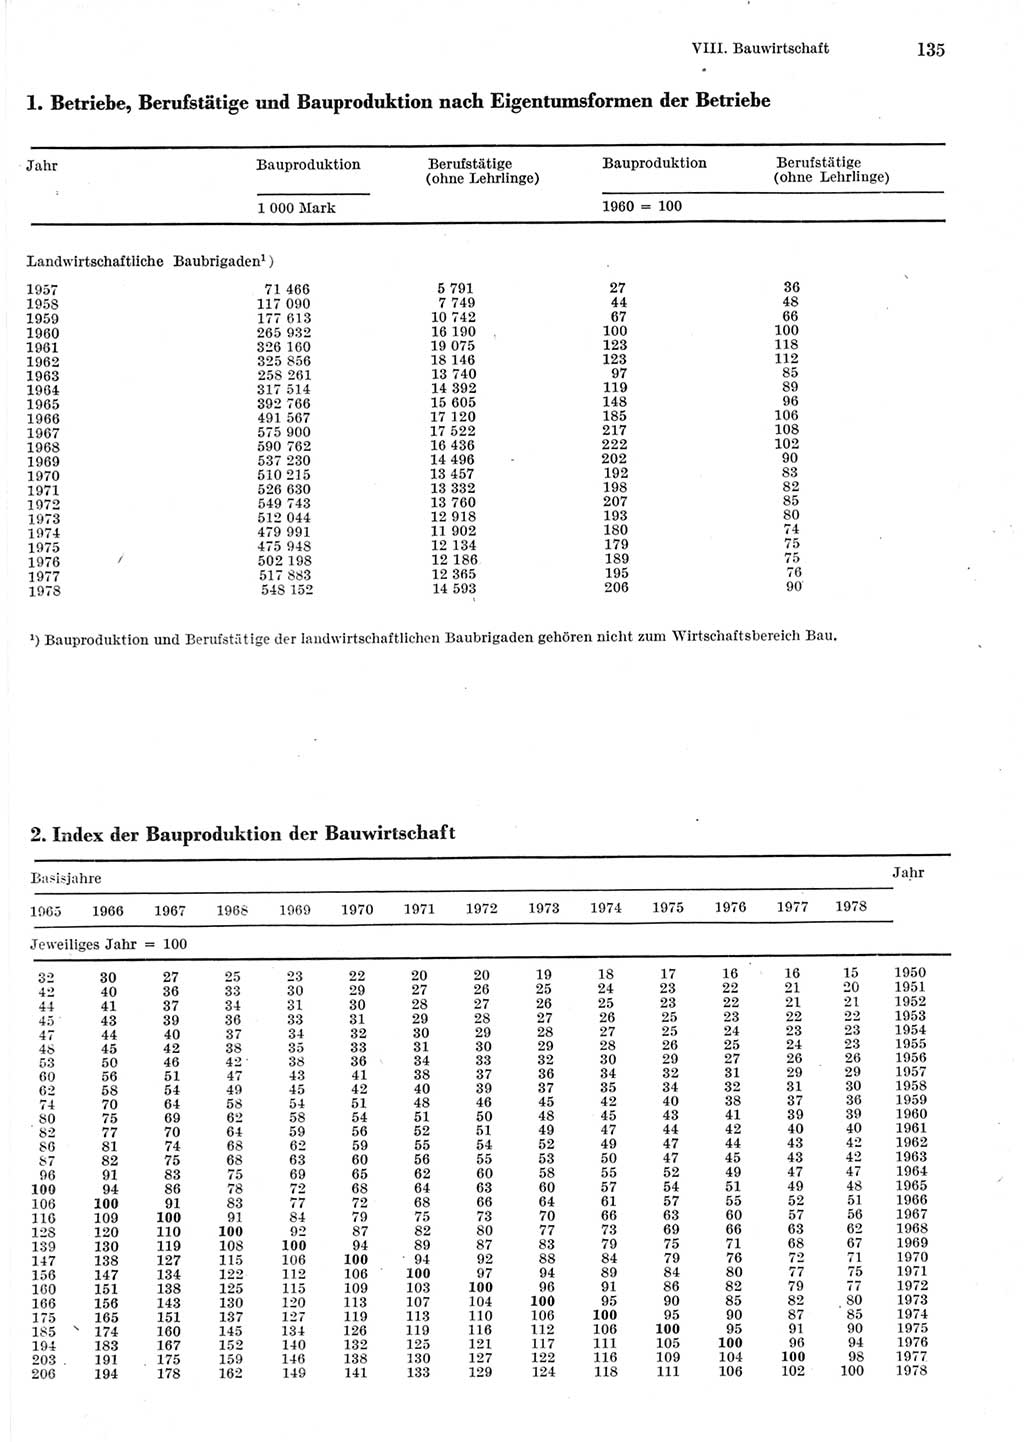 Statistisches Jahrbuch der Deutschen Demokratischen Republik (DDR) 1979, Seite 135 (Stat. Jb. DDR 1979, S. 135)